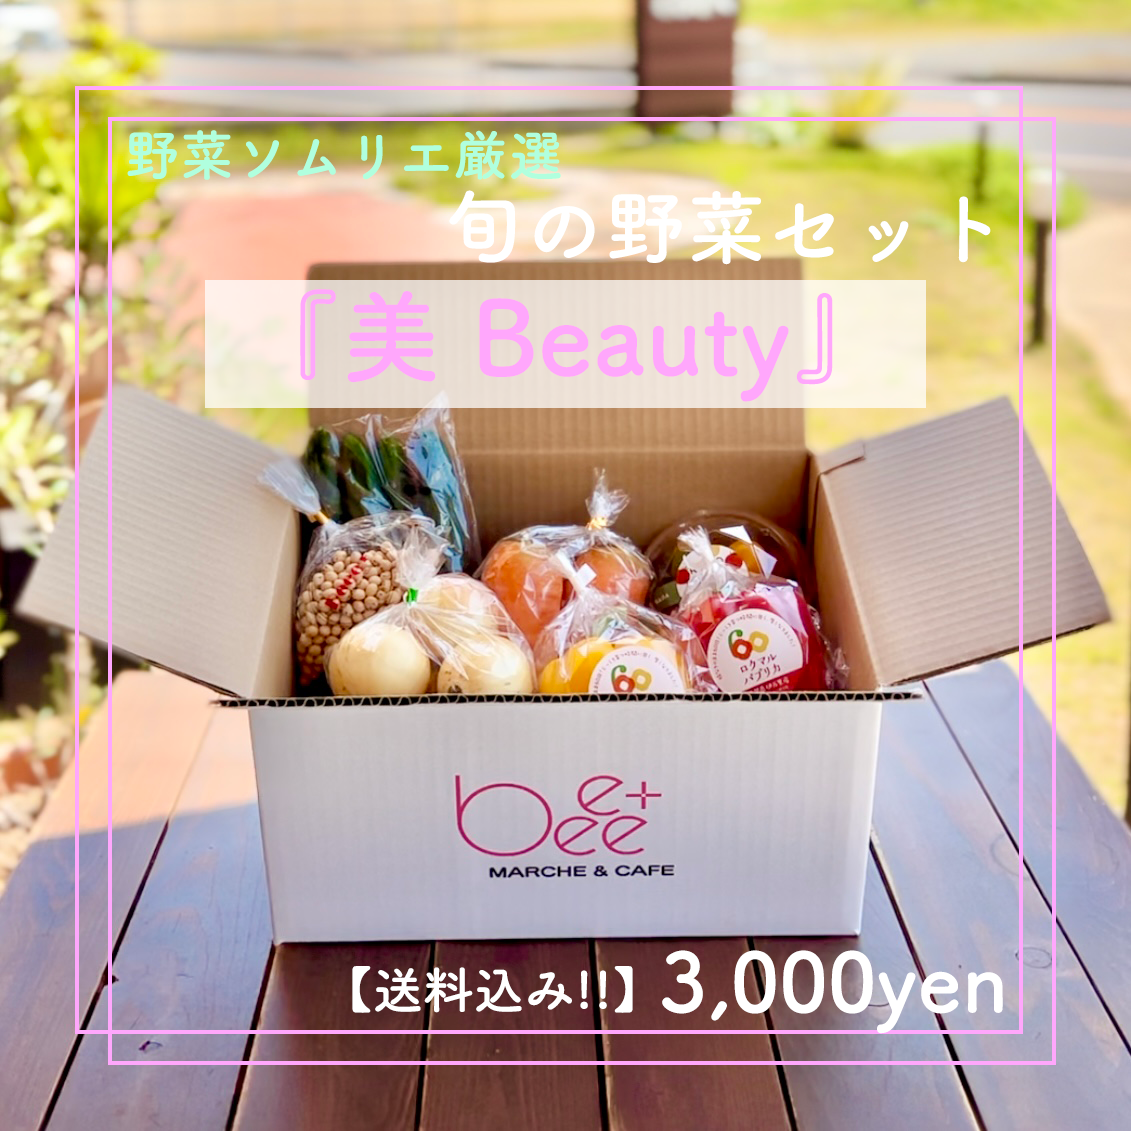 【送料込み】Beee＋野菜ソムリエ厳選『美 Beauty』旬の野菜セット